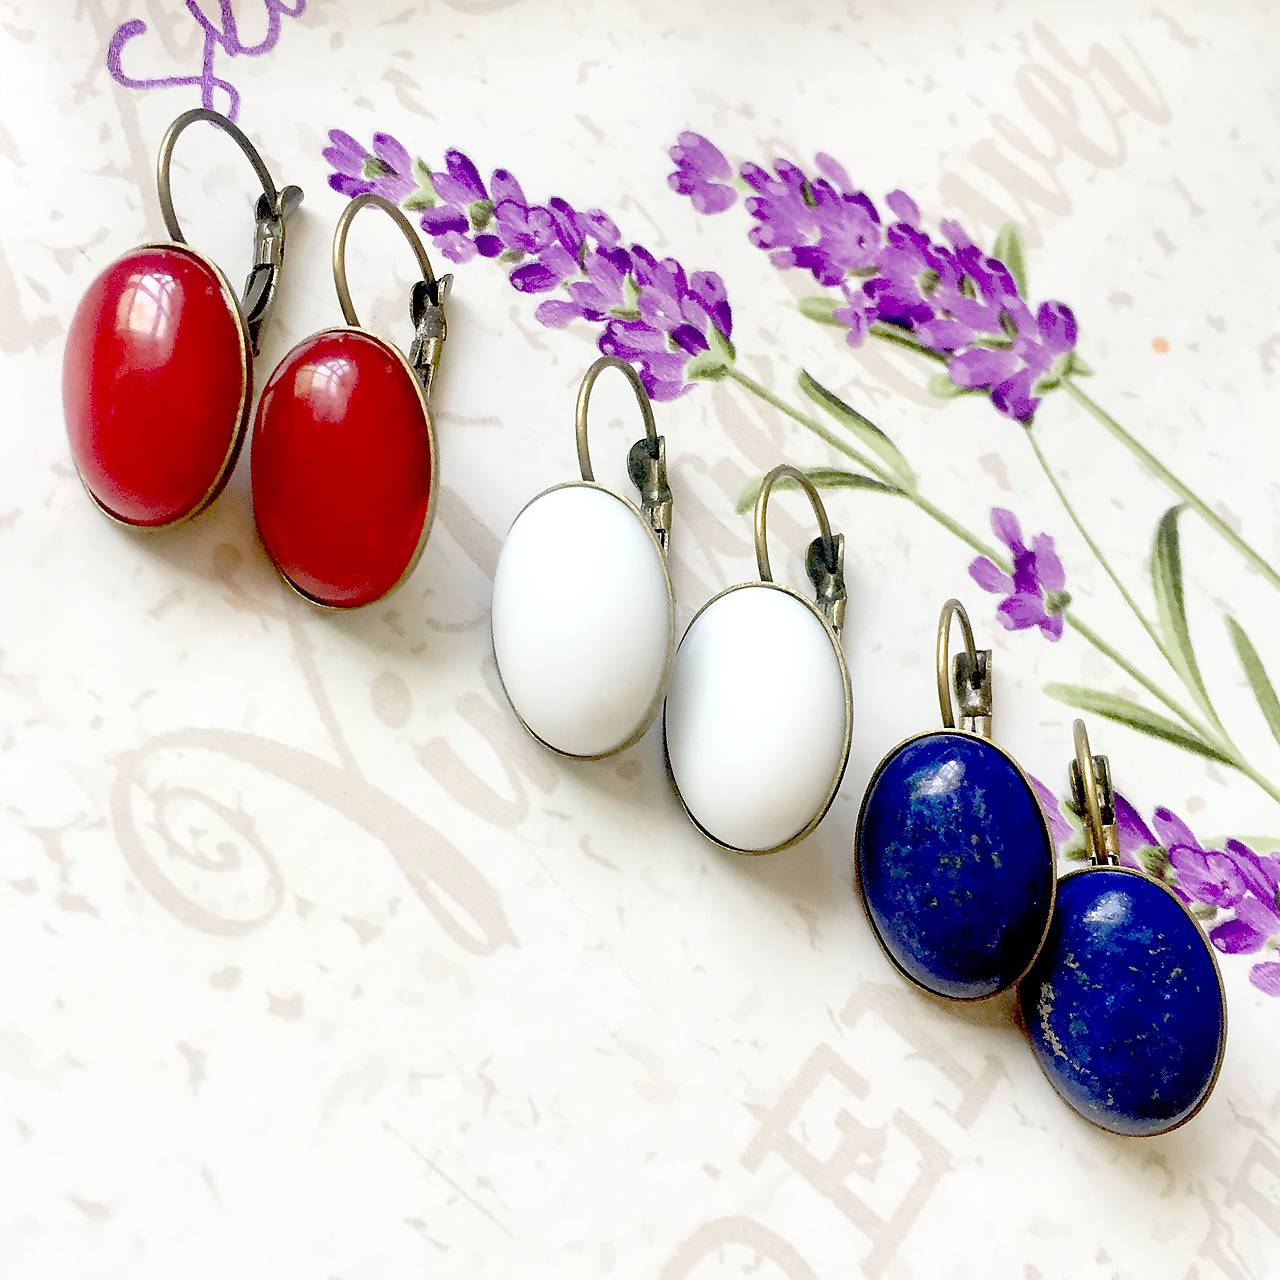 Elegant French Clasp Earrings 3 Pairs / Náušnice s bielym jadeitom, lazuritom a červeným jadeitom - 3 páry /0085